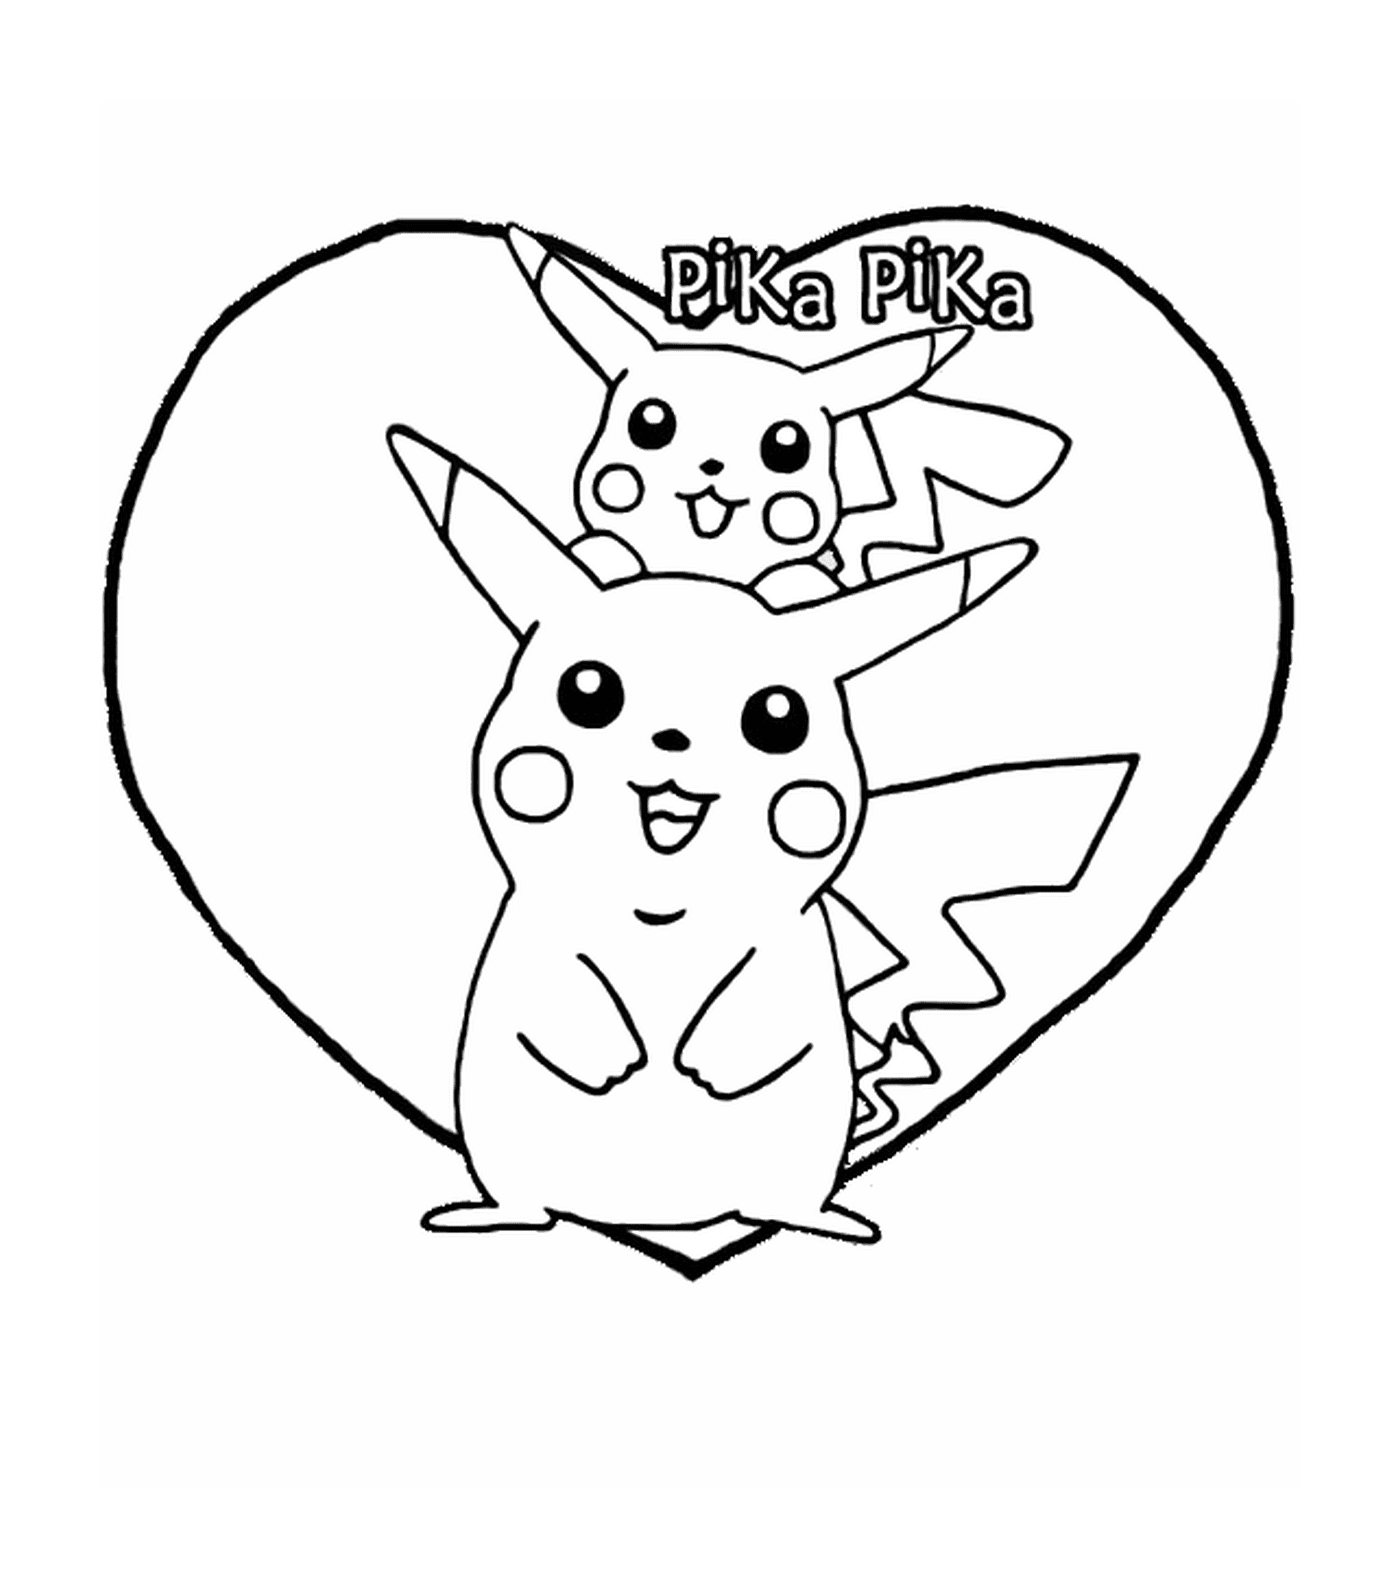  Pikachu e Pika in un cuore 